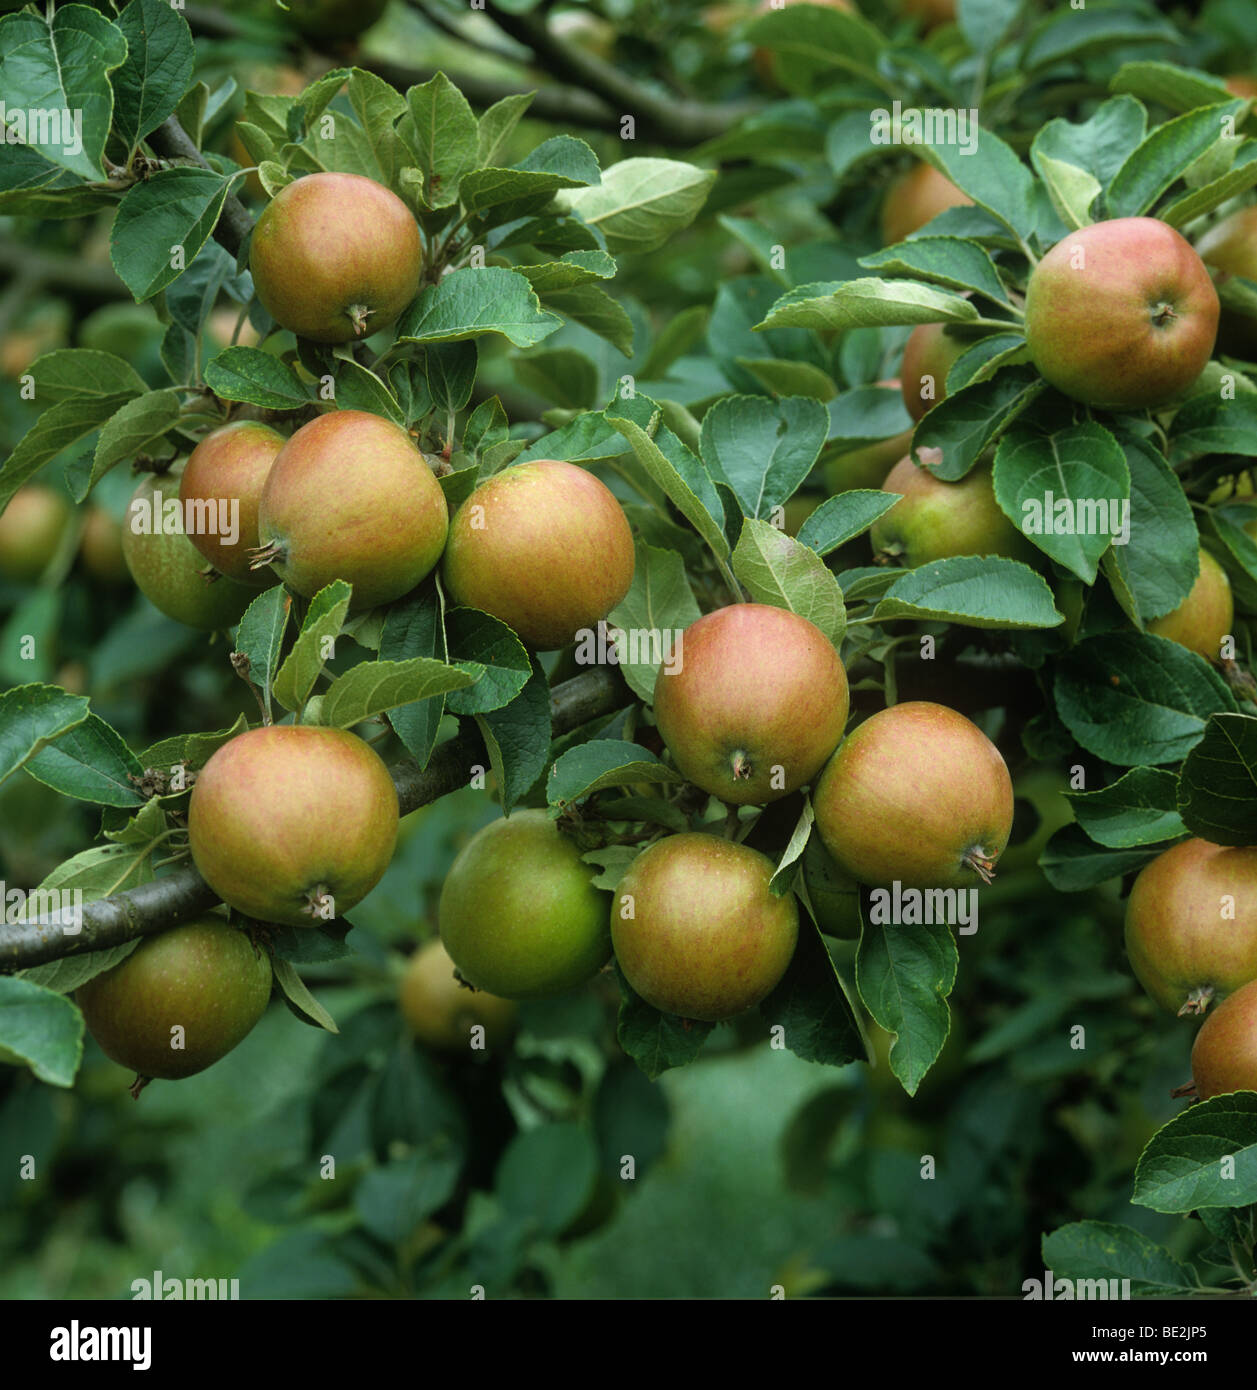 Coppia coxs orange pippin frutto di Apple sulla struttura ad albero Foto Stock